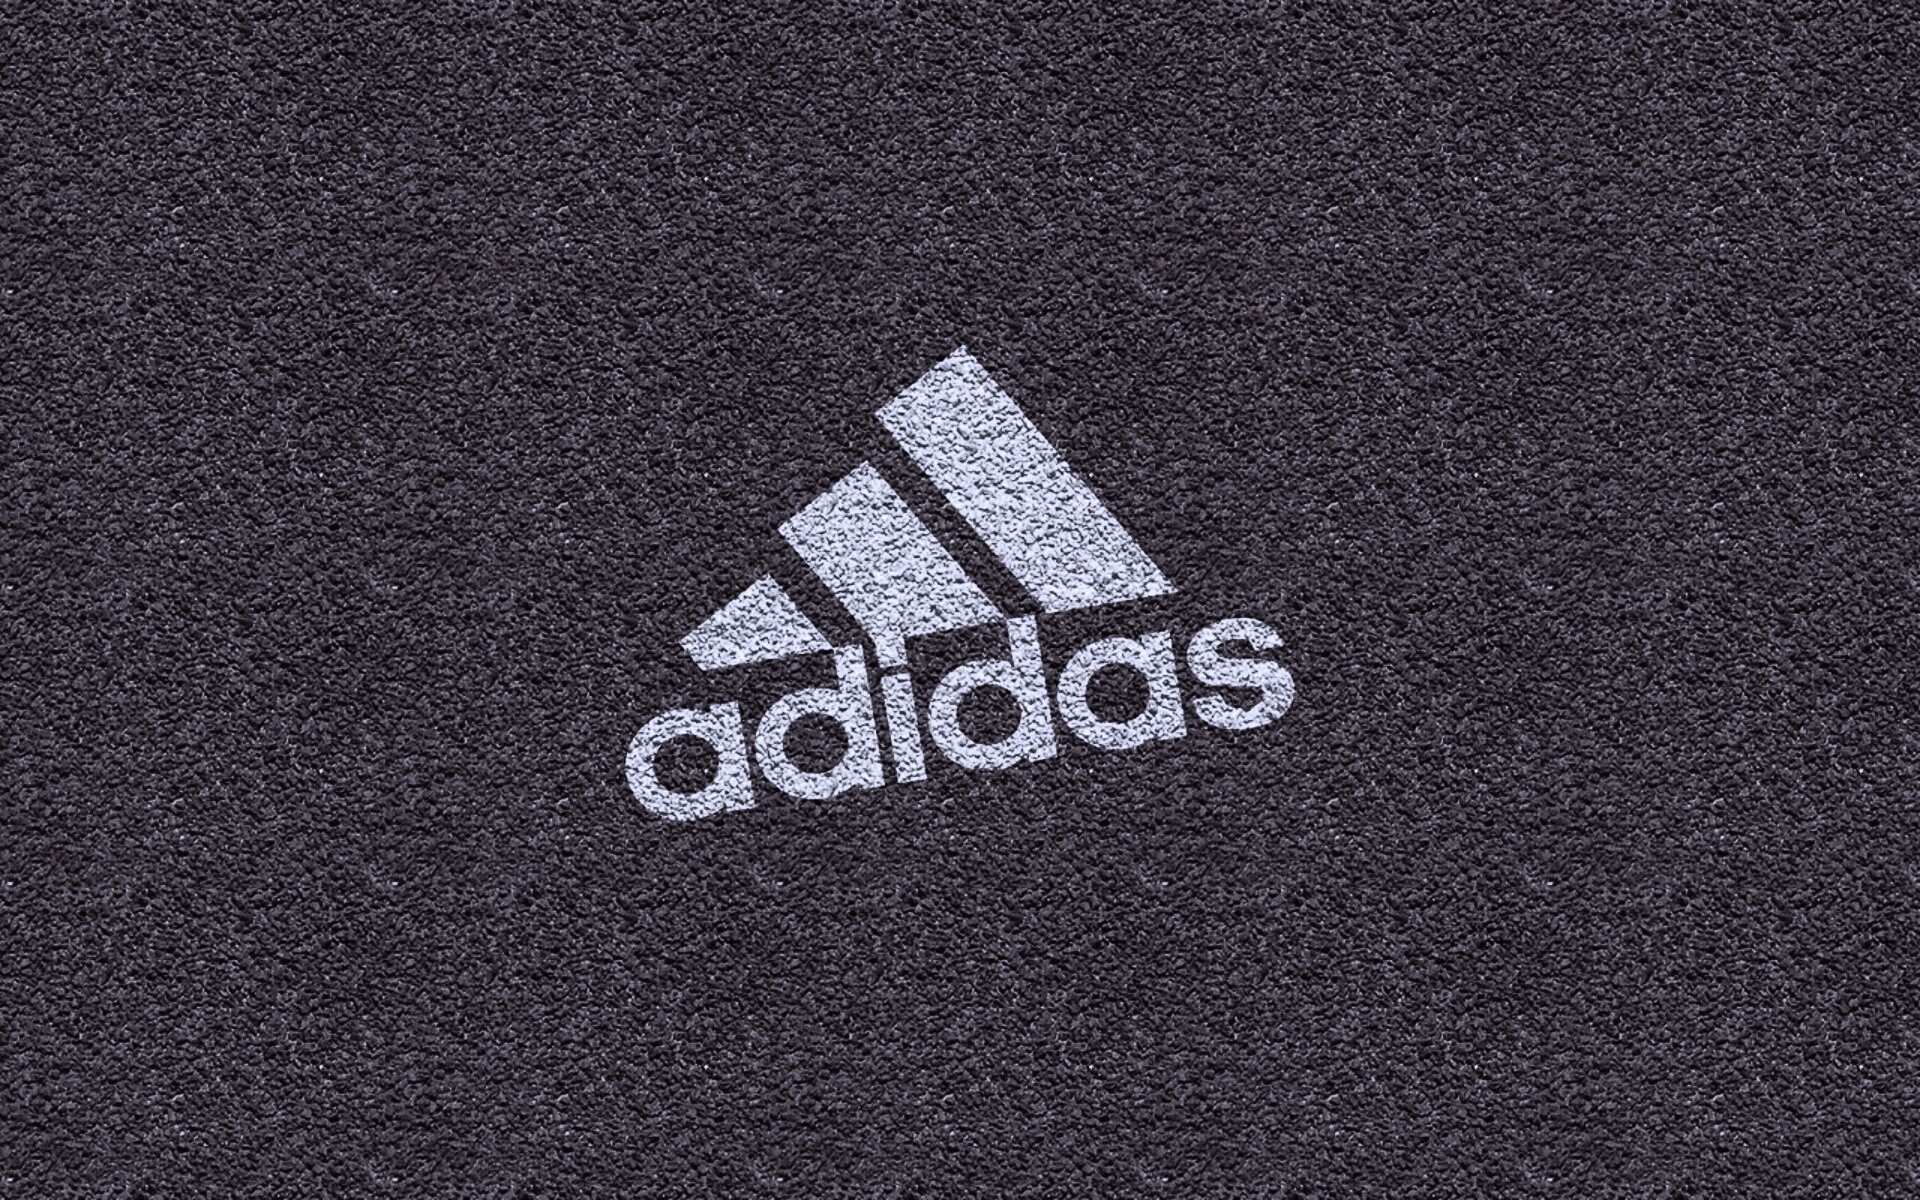 Фотография адидас. Адидас. Картинки адидас. Adidas обои. Адидас лого.